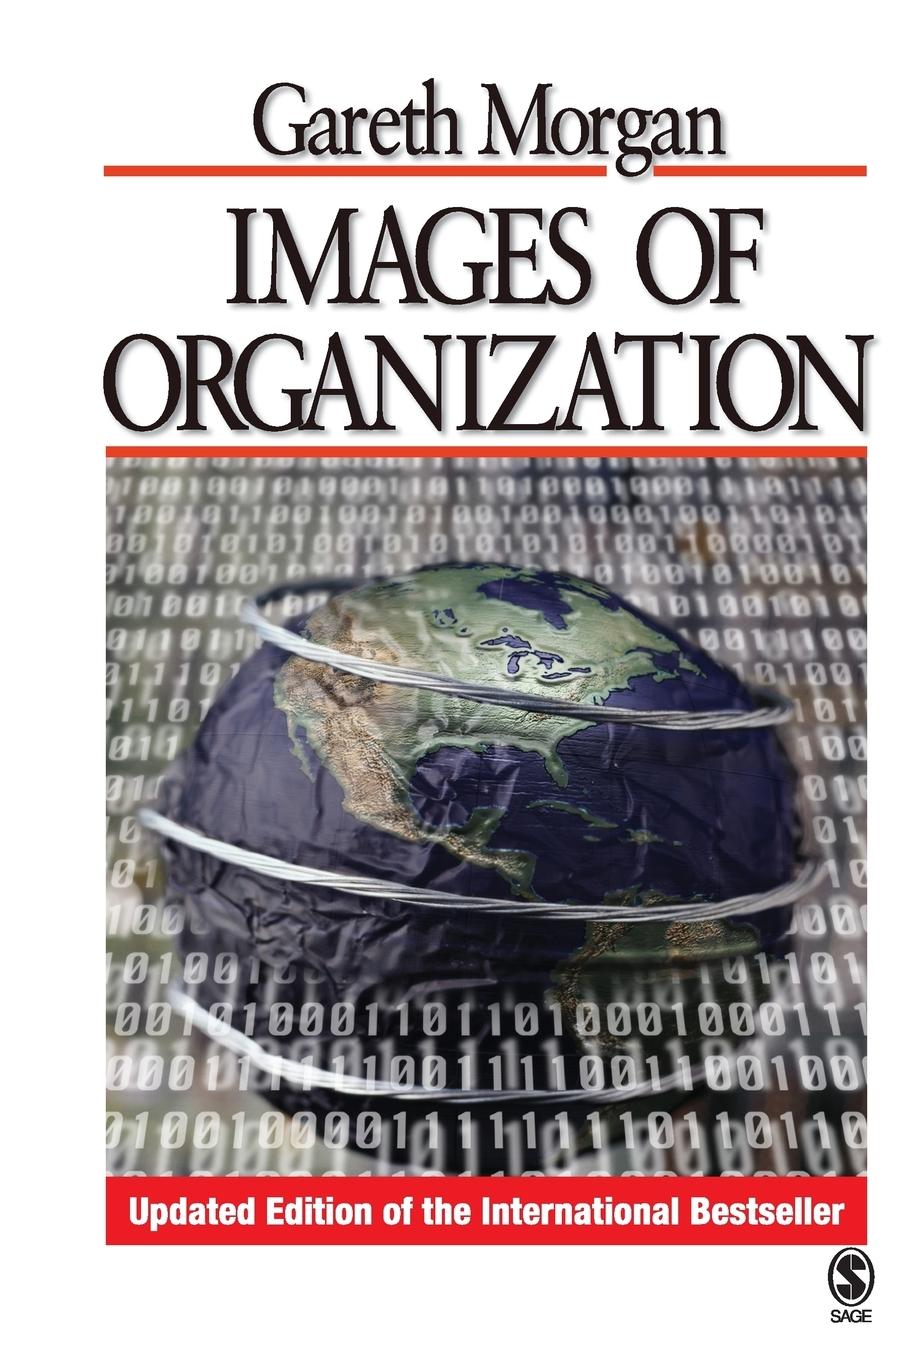 Images of Organization / Gareth Morgan / Taschenbuch / Paperback / Kartoniert / Broschiert / Englisch / 2006 / Sage Publications, Inc / EAN 9781412939799 - Morgan, Gareth